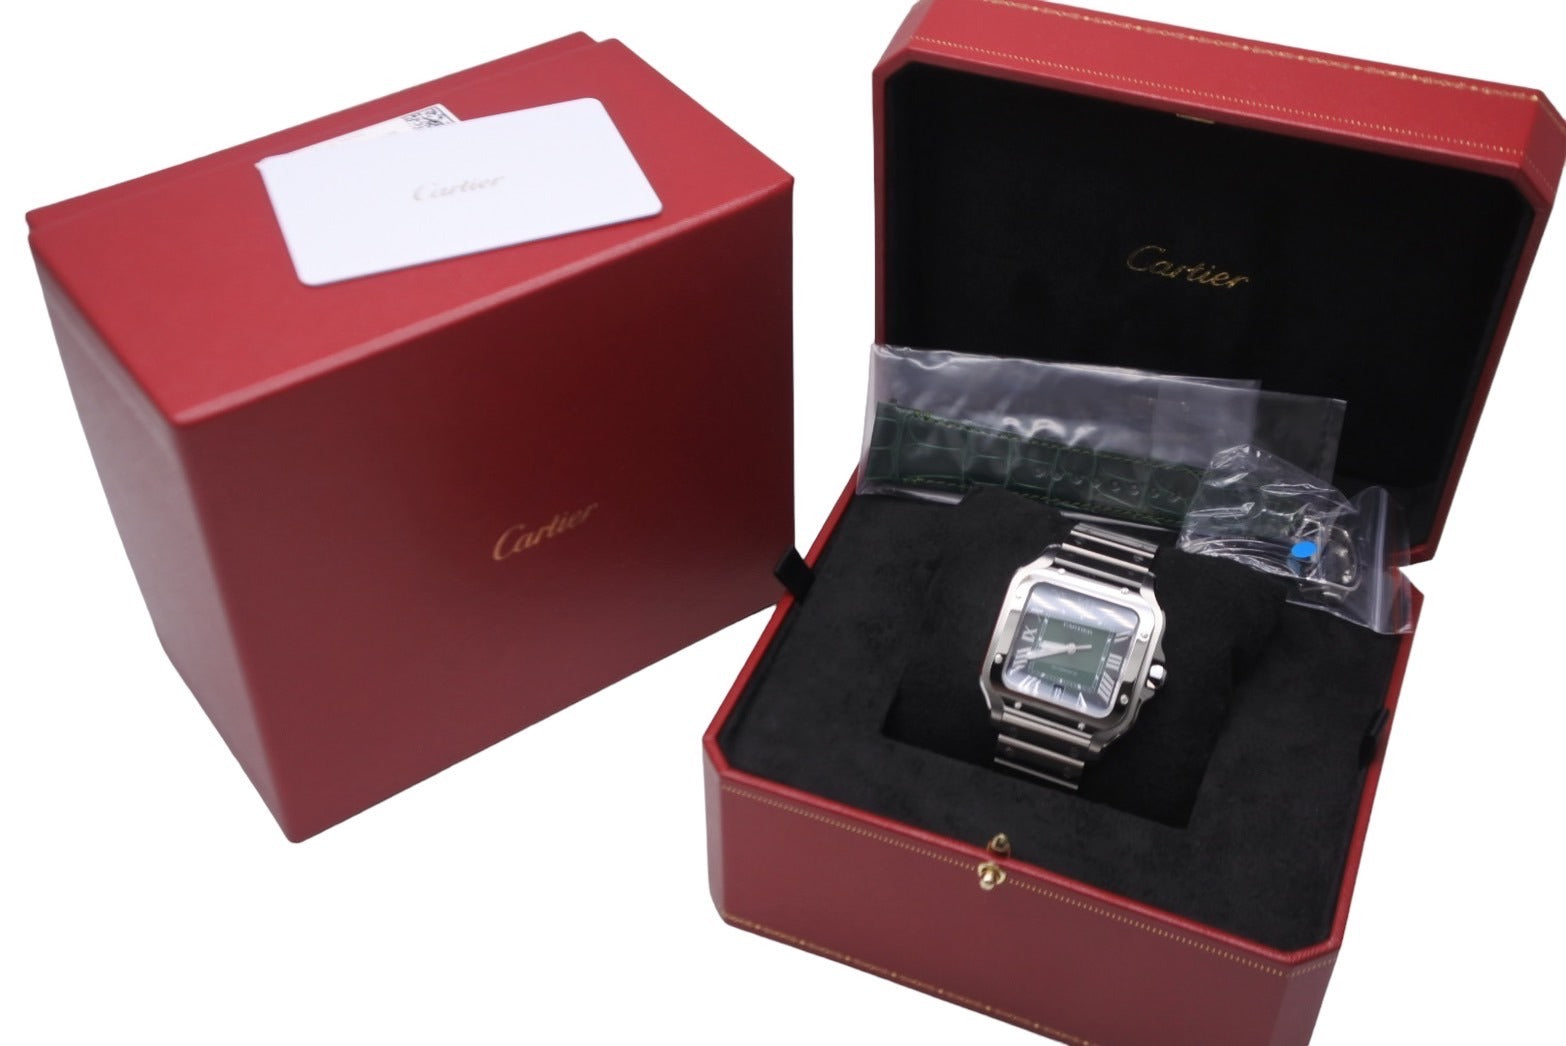 カルティエ CARTIER WSSA0062 グリーン メンズ 腕時計